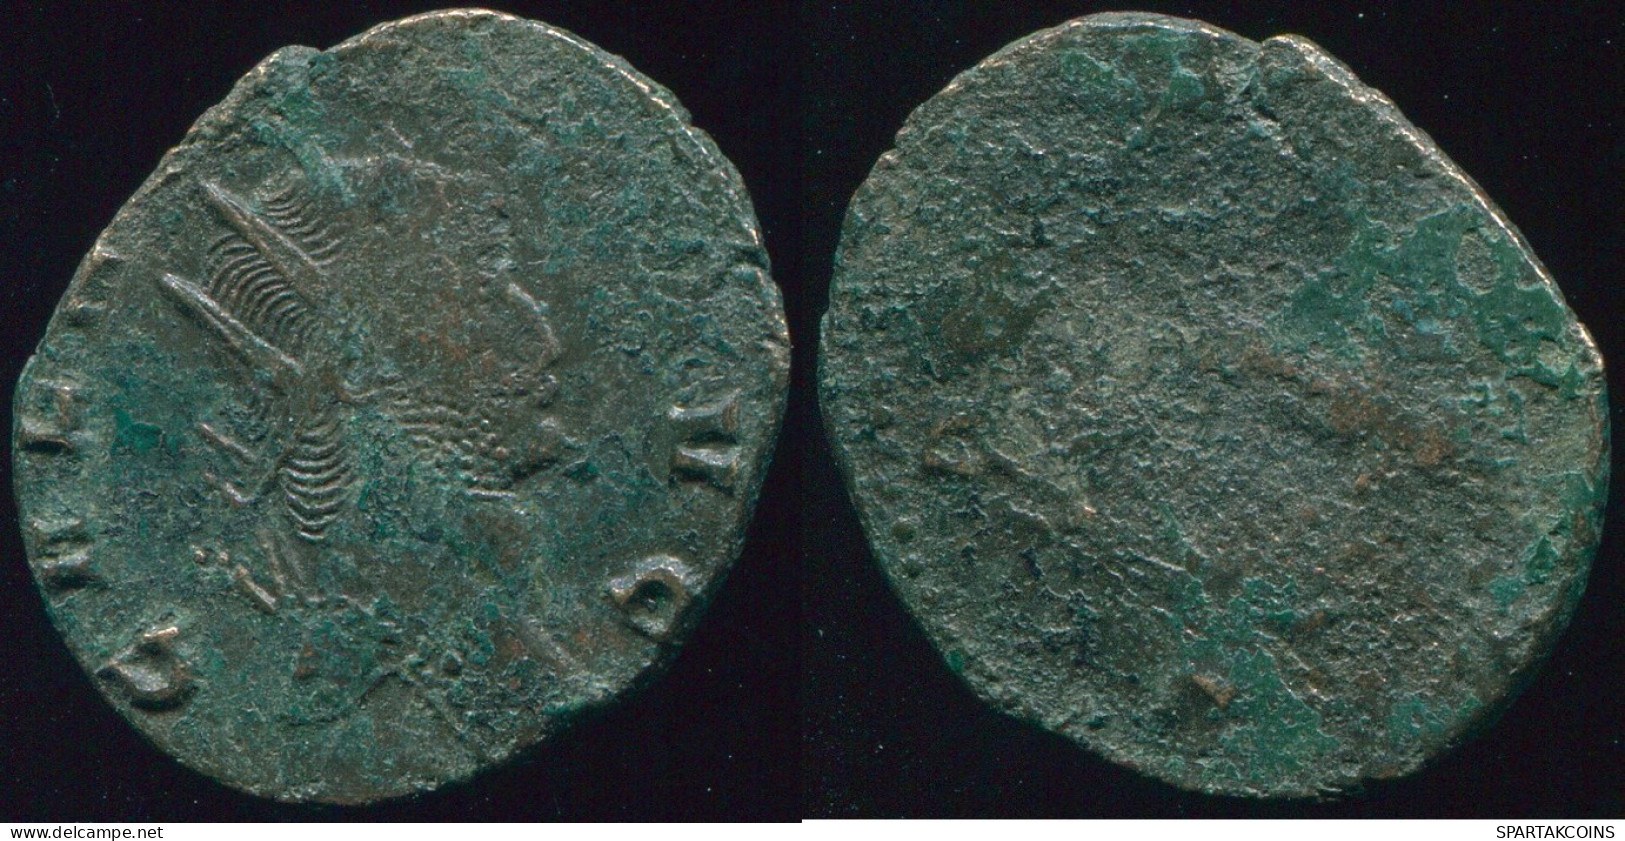 RÖMISCHE PROVINZMÜNZE Roman Provincial Ancient Coin 2.55g/19.90mm #RPR1013.10.D.A - Province